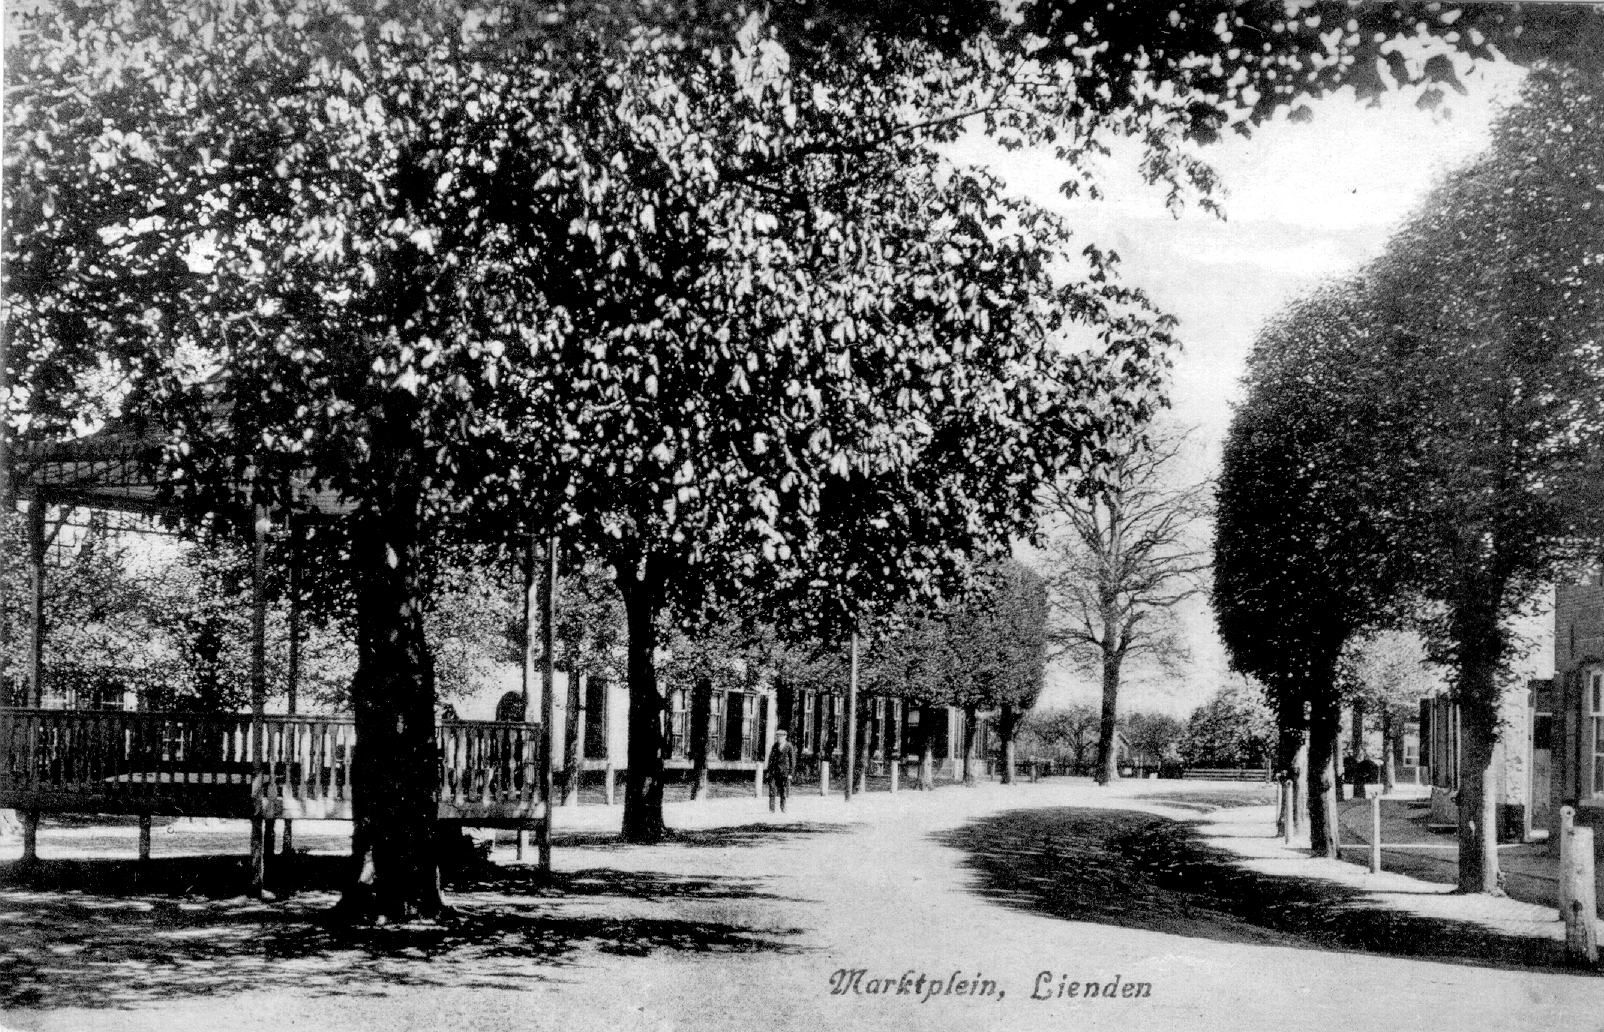 Marktplein Lienden<br /> Originele foto, 1916<br /> Uitgever wed. J.C. van Mil, Lienden<br /> Collectie A. Datema